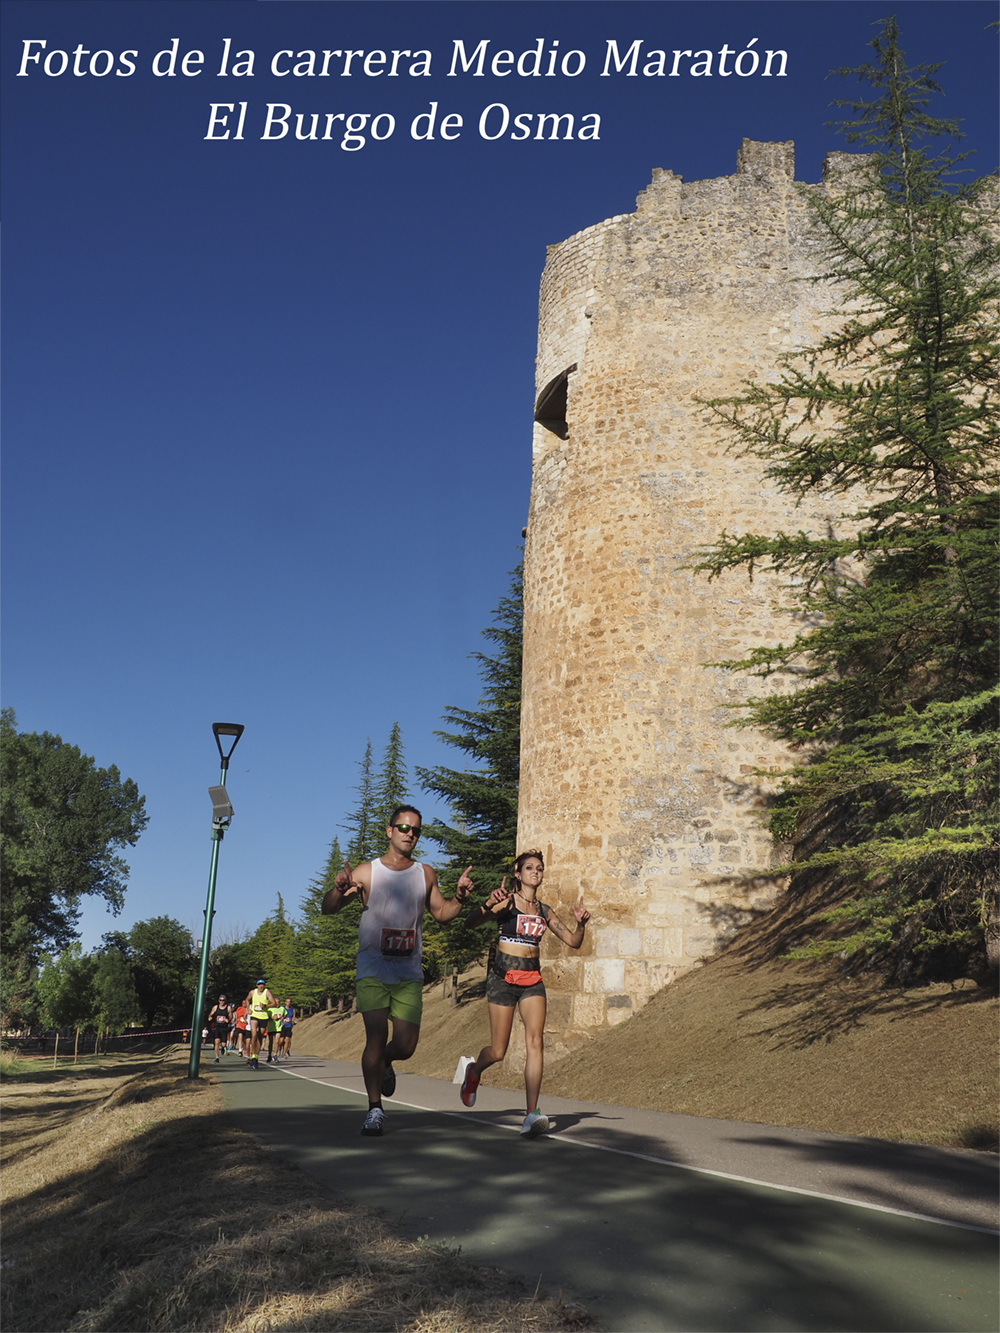 Carrera de la media maratón en el Burgo de osma
